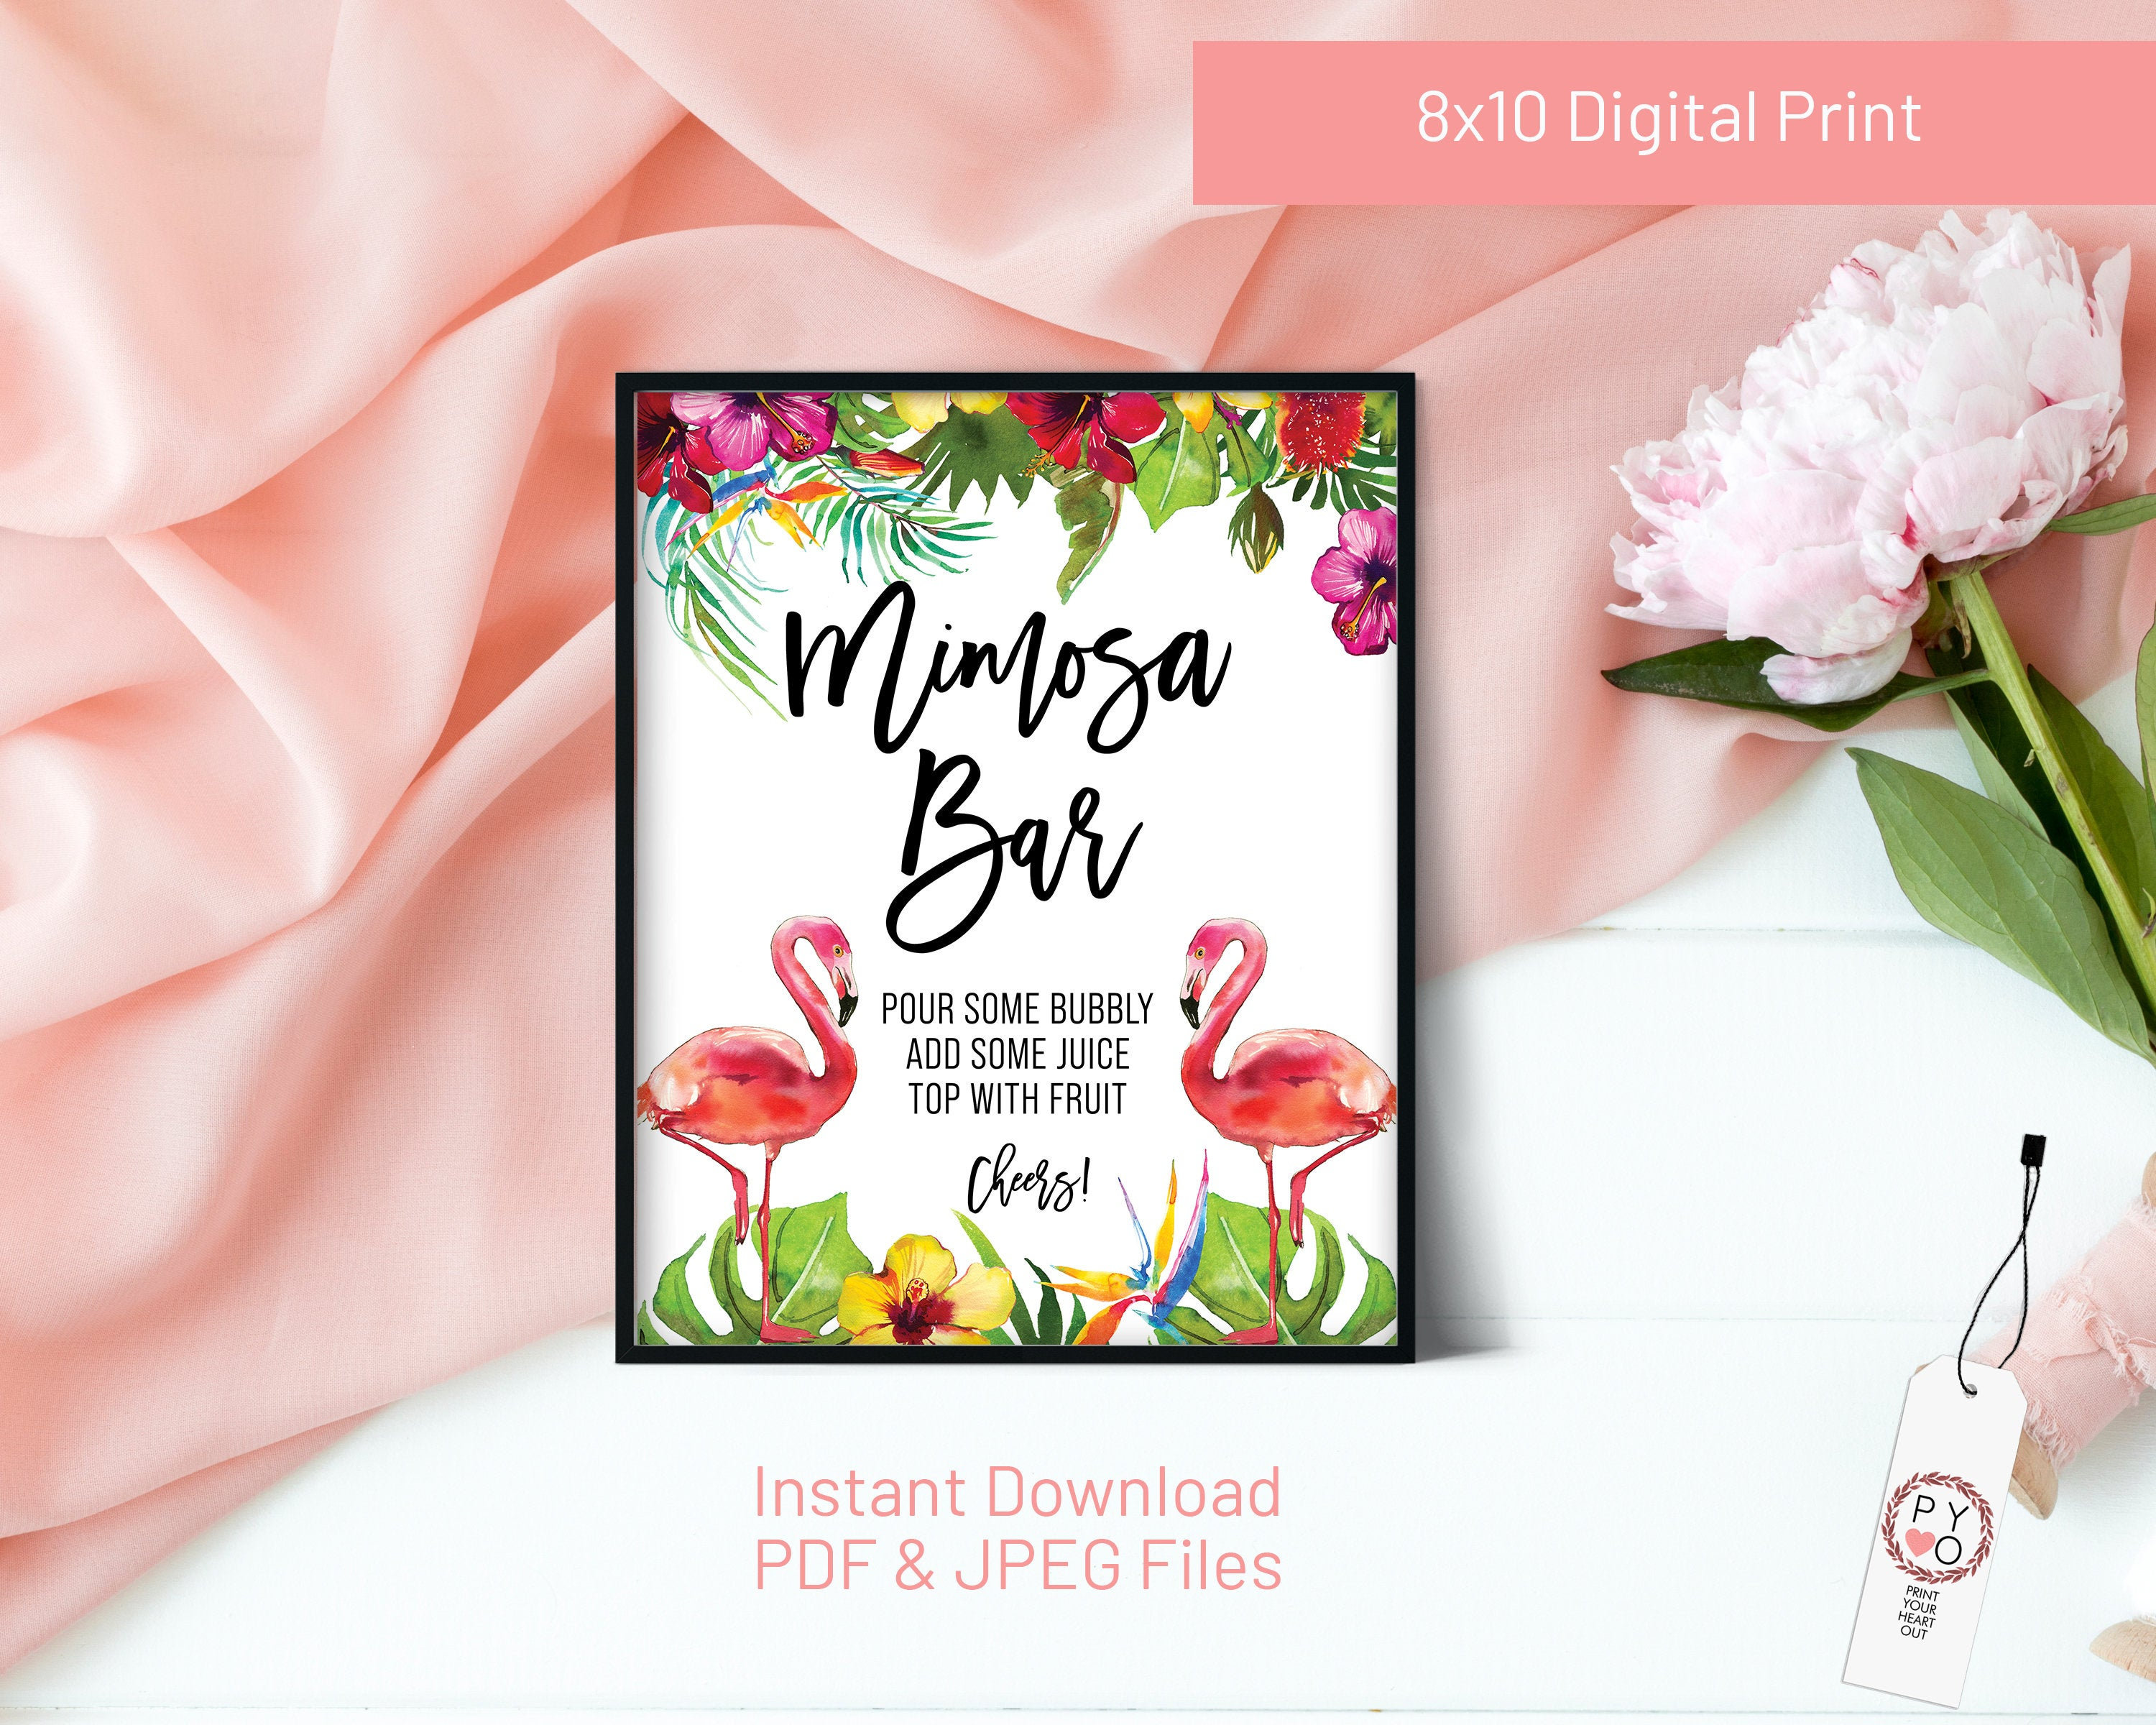 Mimosa Bar Sign Download, Printable Mimosa Sign, Printable Bridal